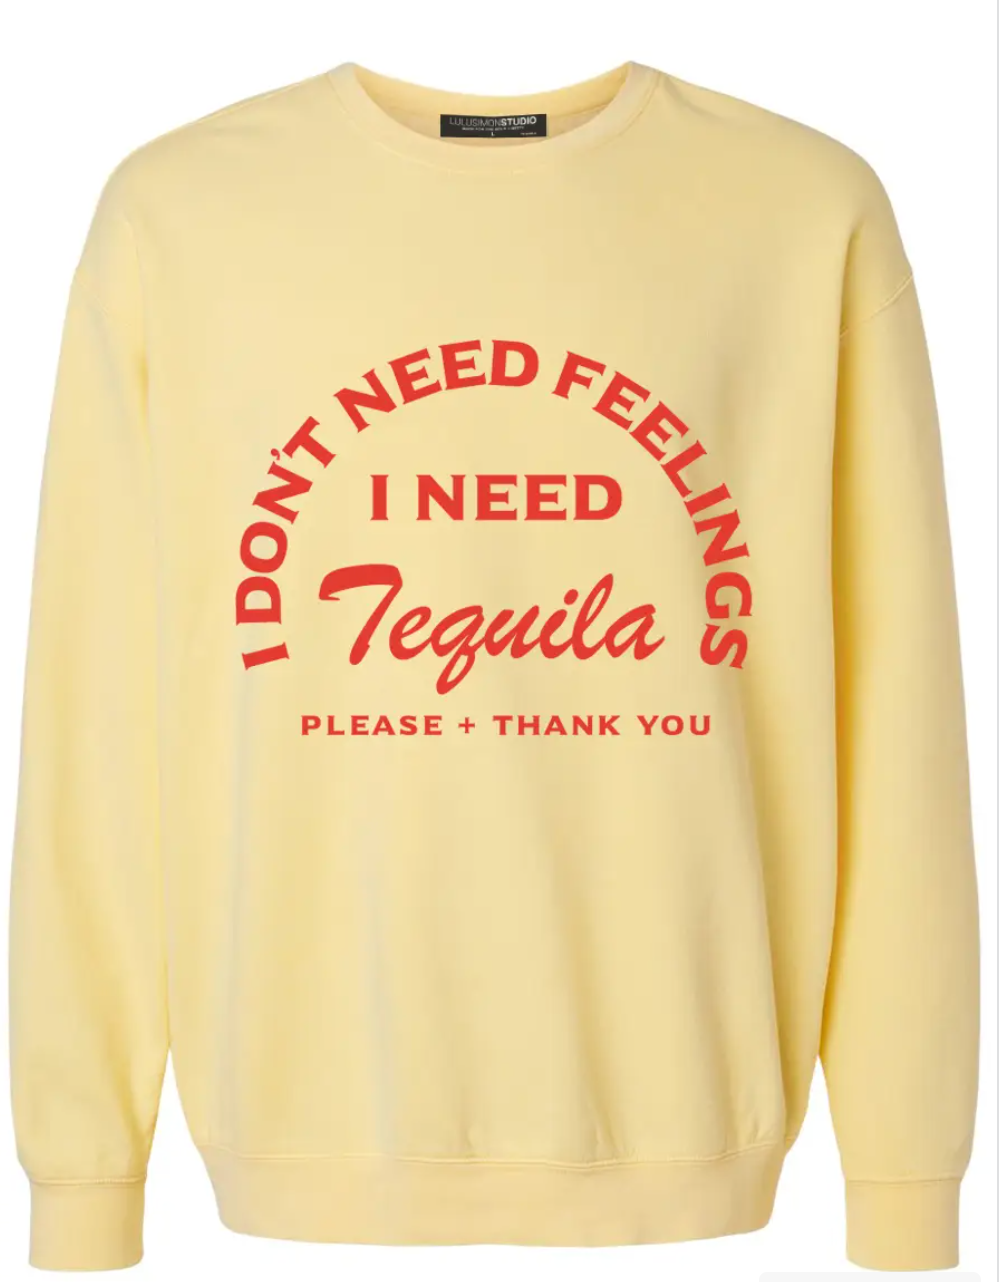 I Don't Need Feelings I Need Tequila Garment Dye Sweatshirt